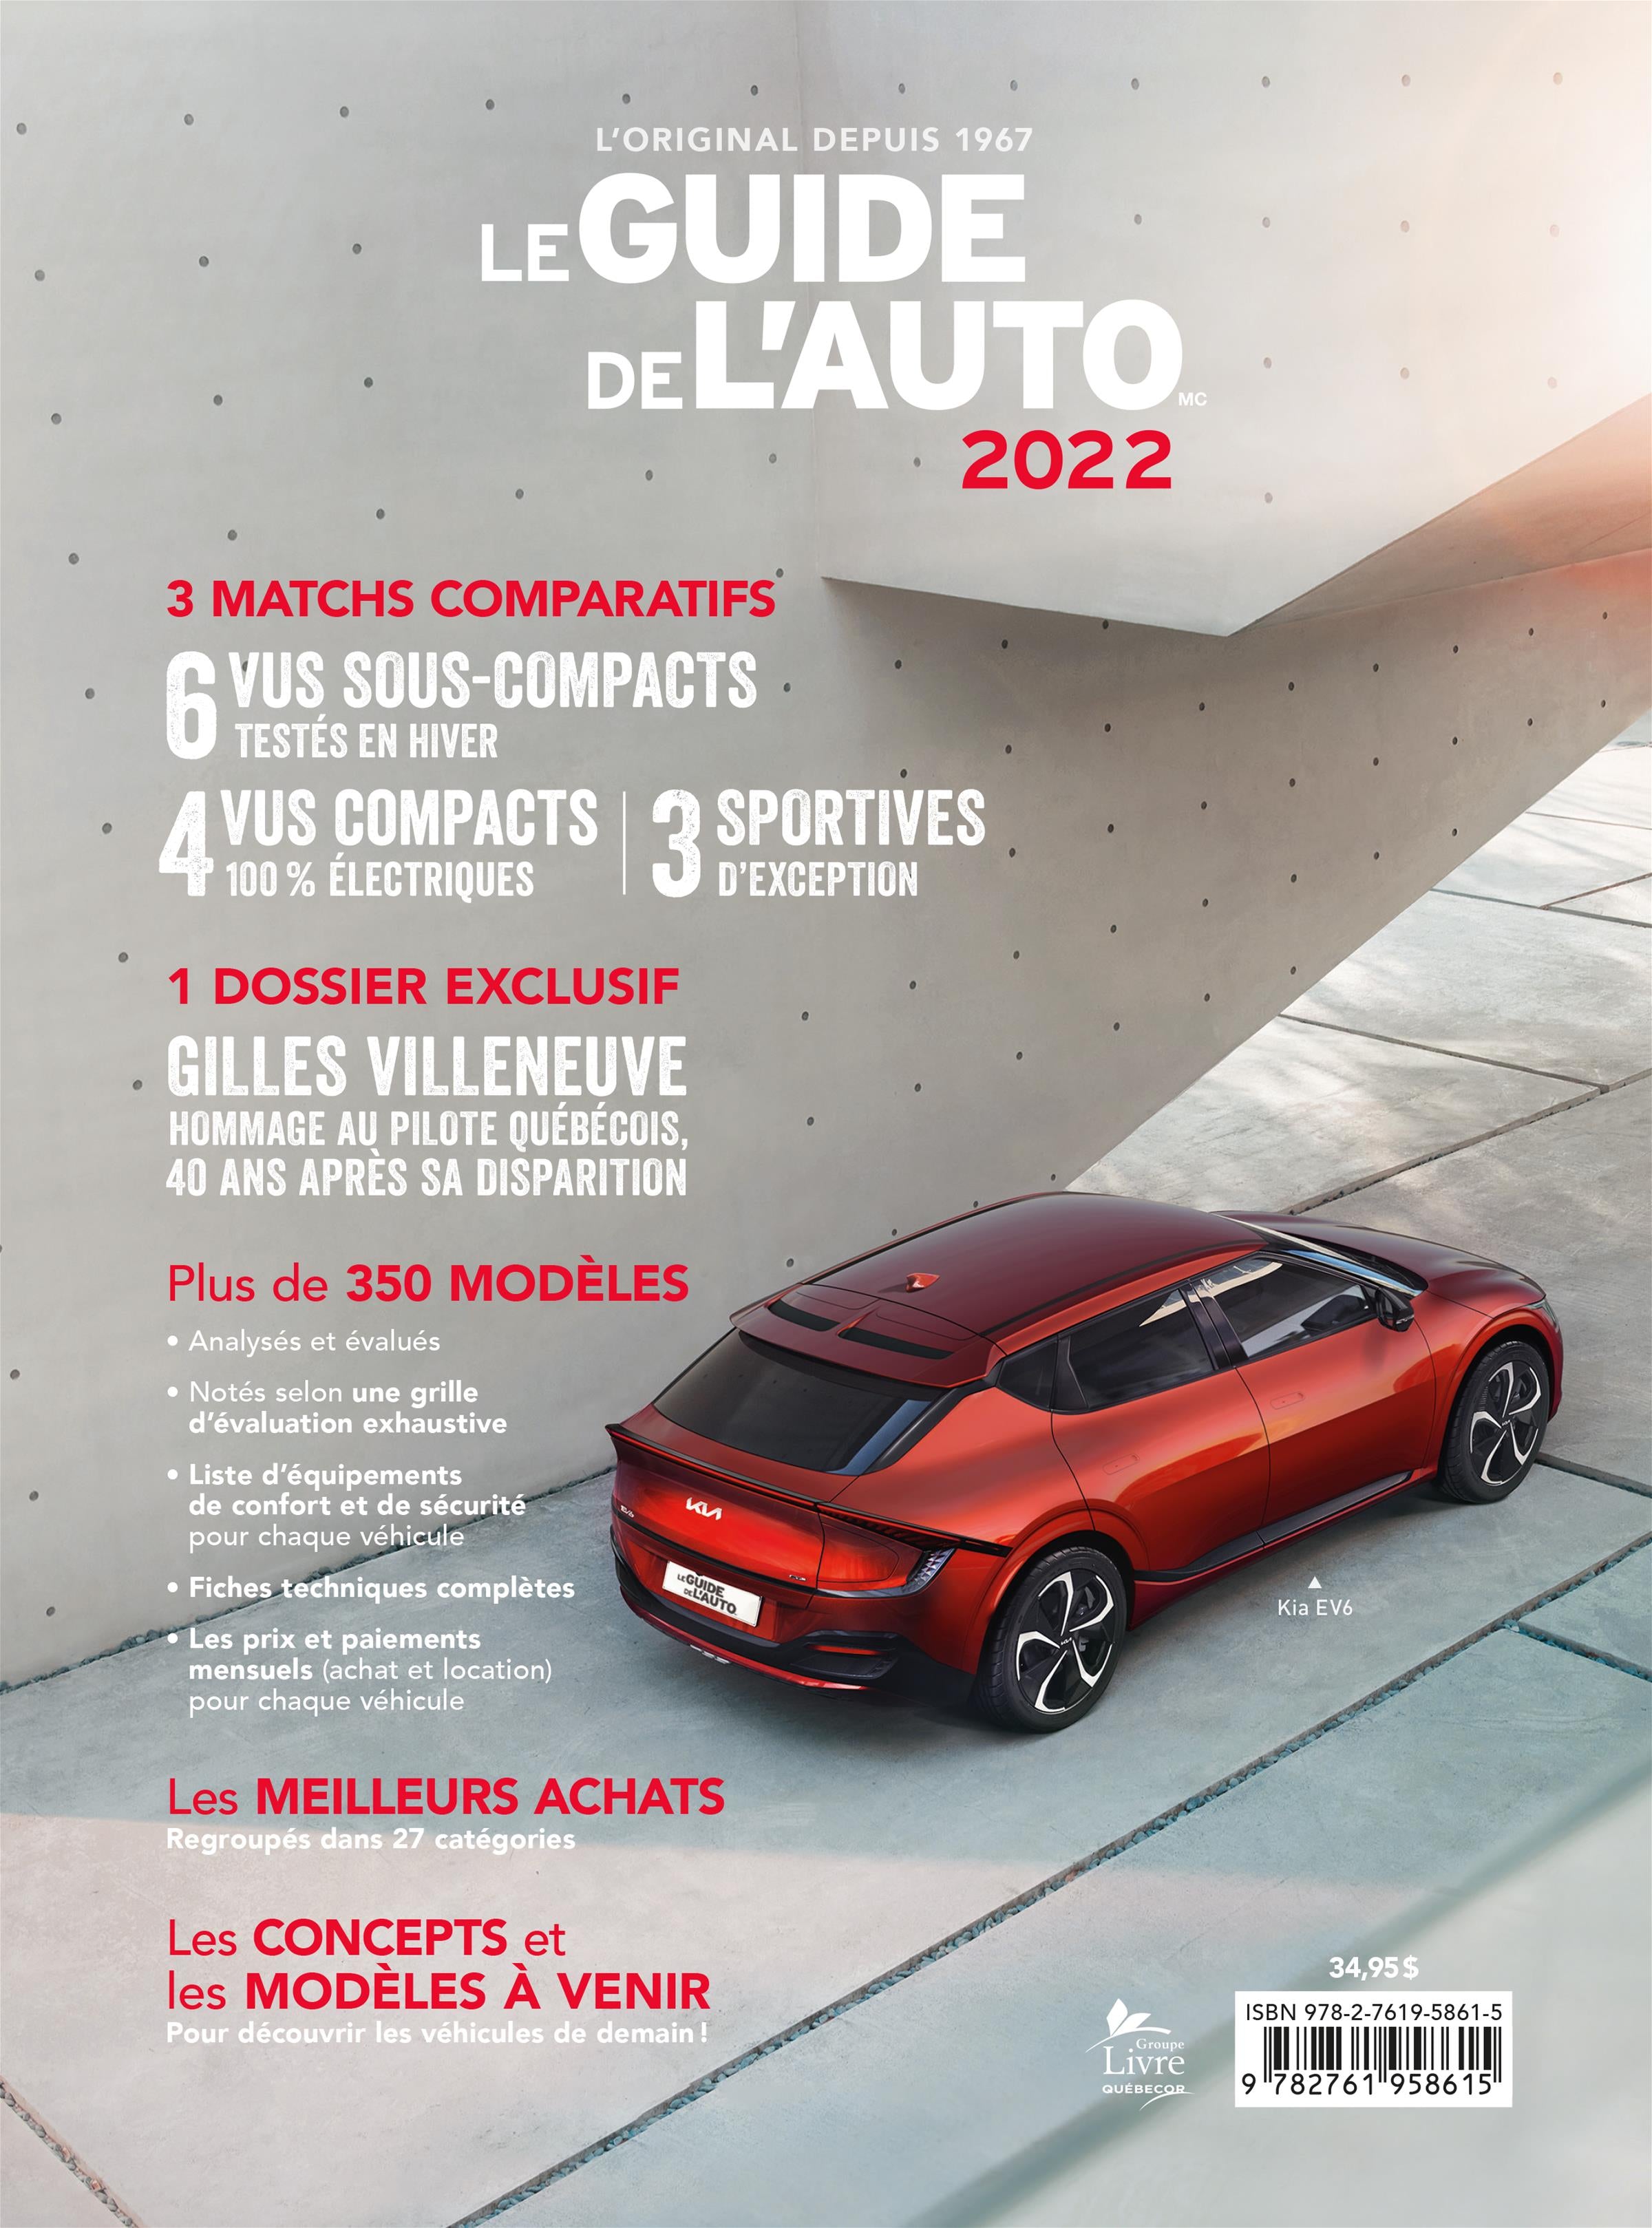 Le guide de l'auto 2022 (Livre) – QUB livre